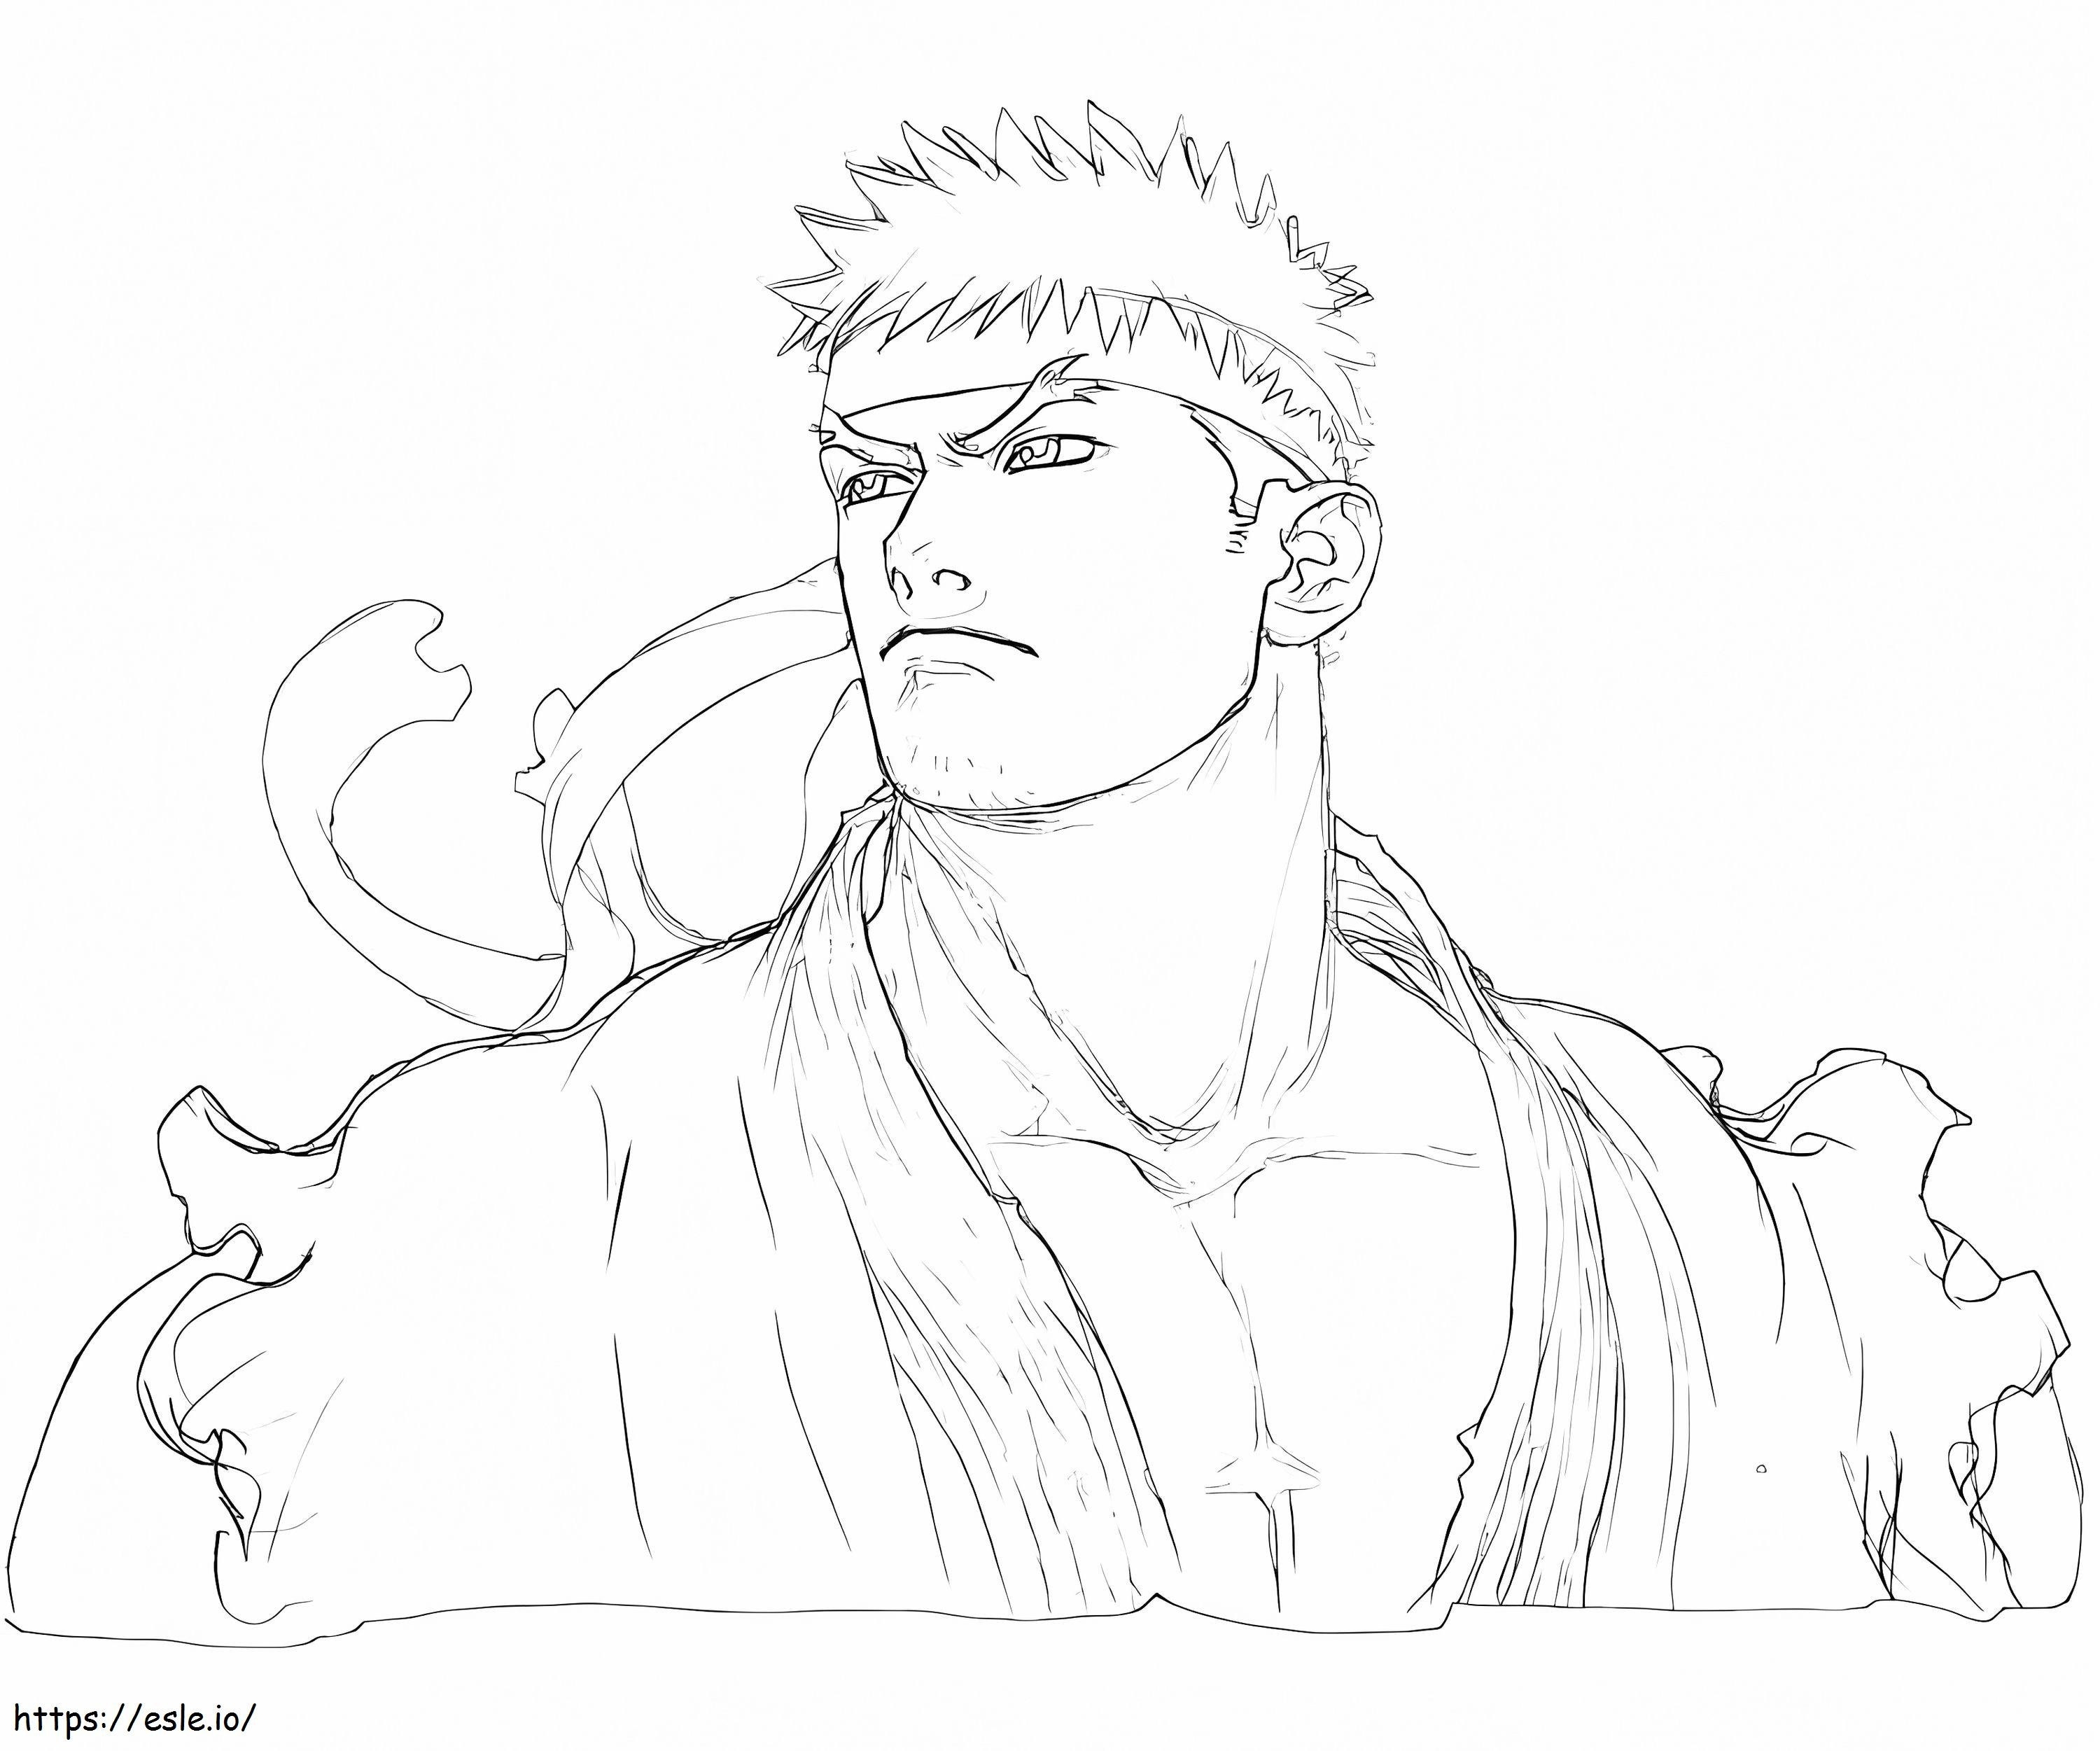 Sketch Ryu coloring page